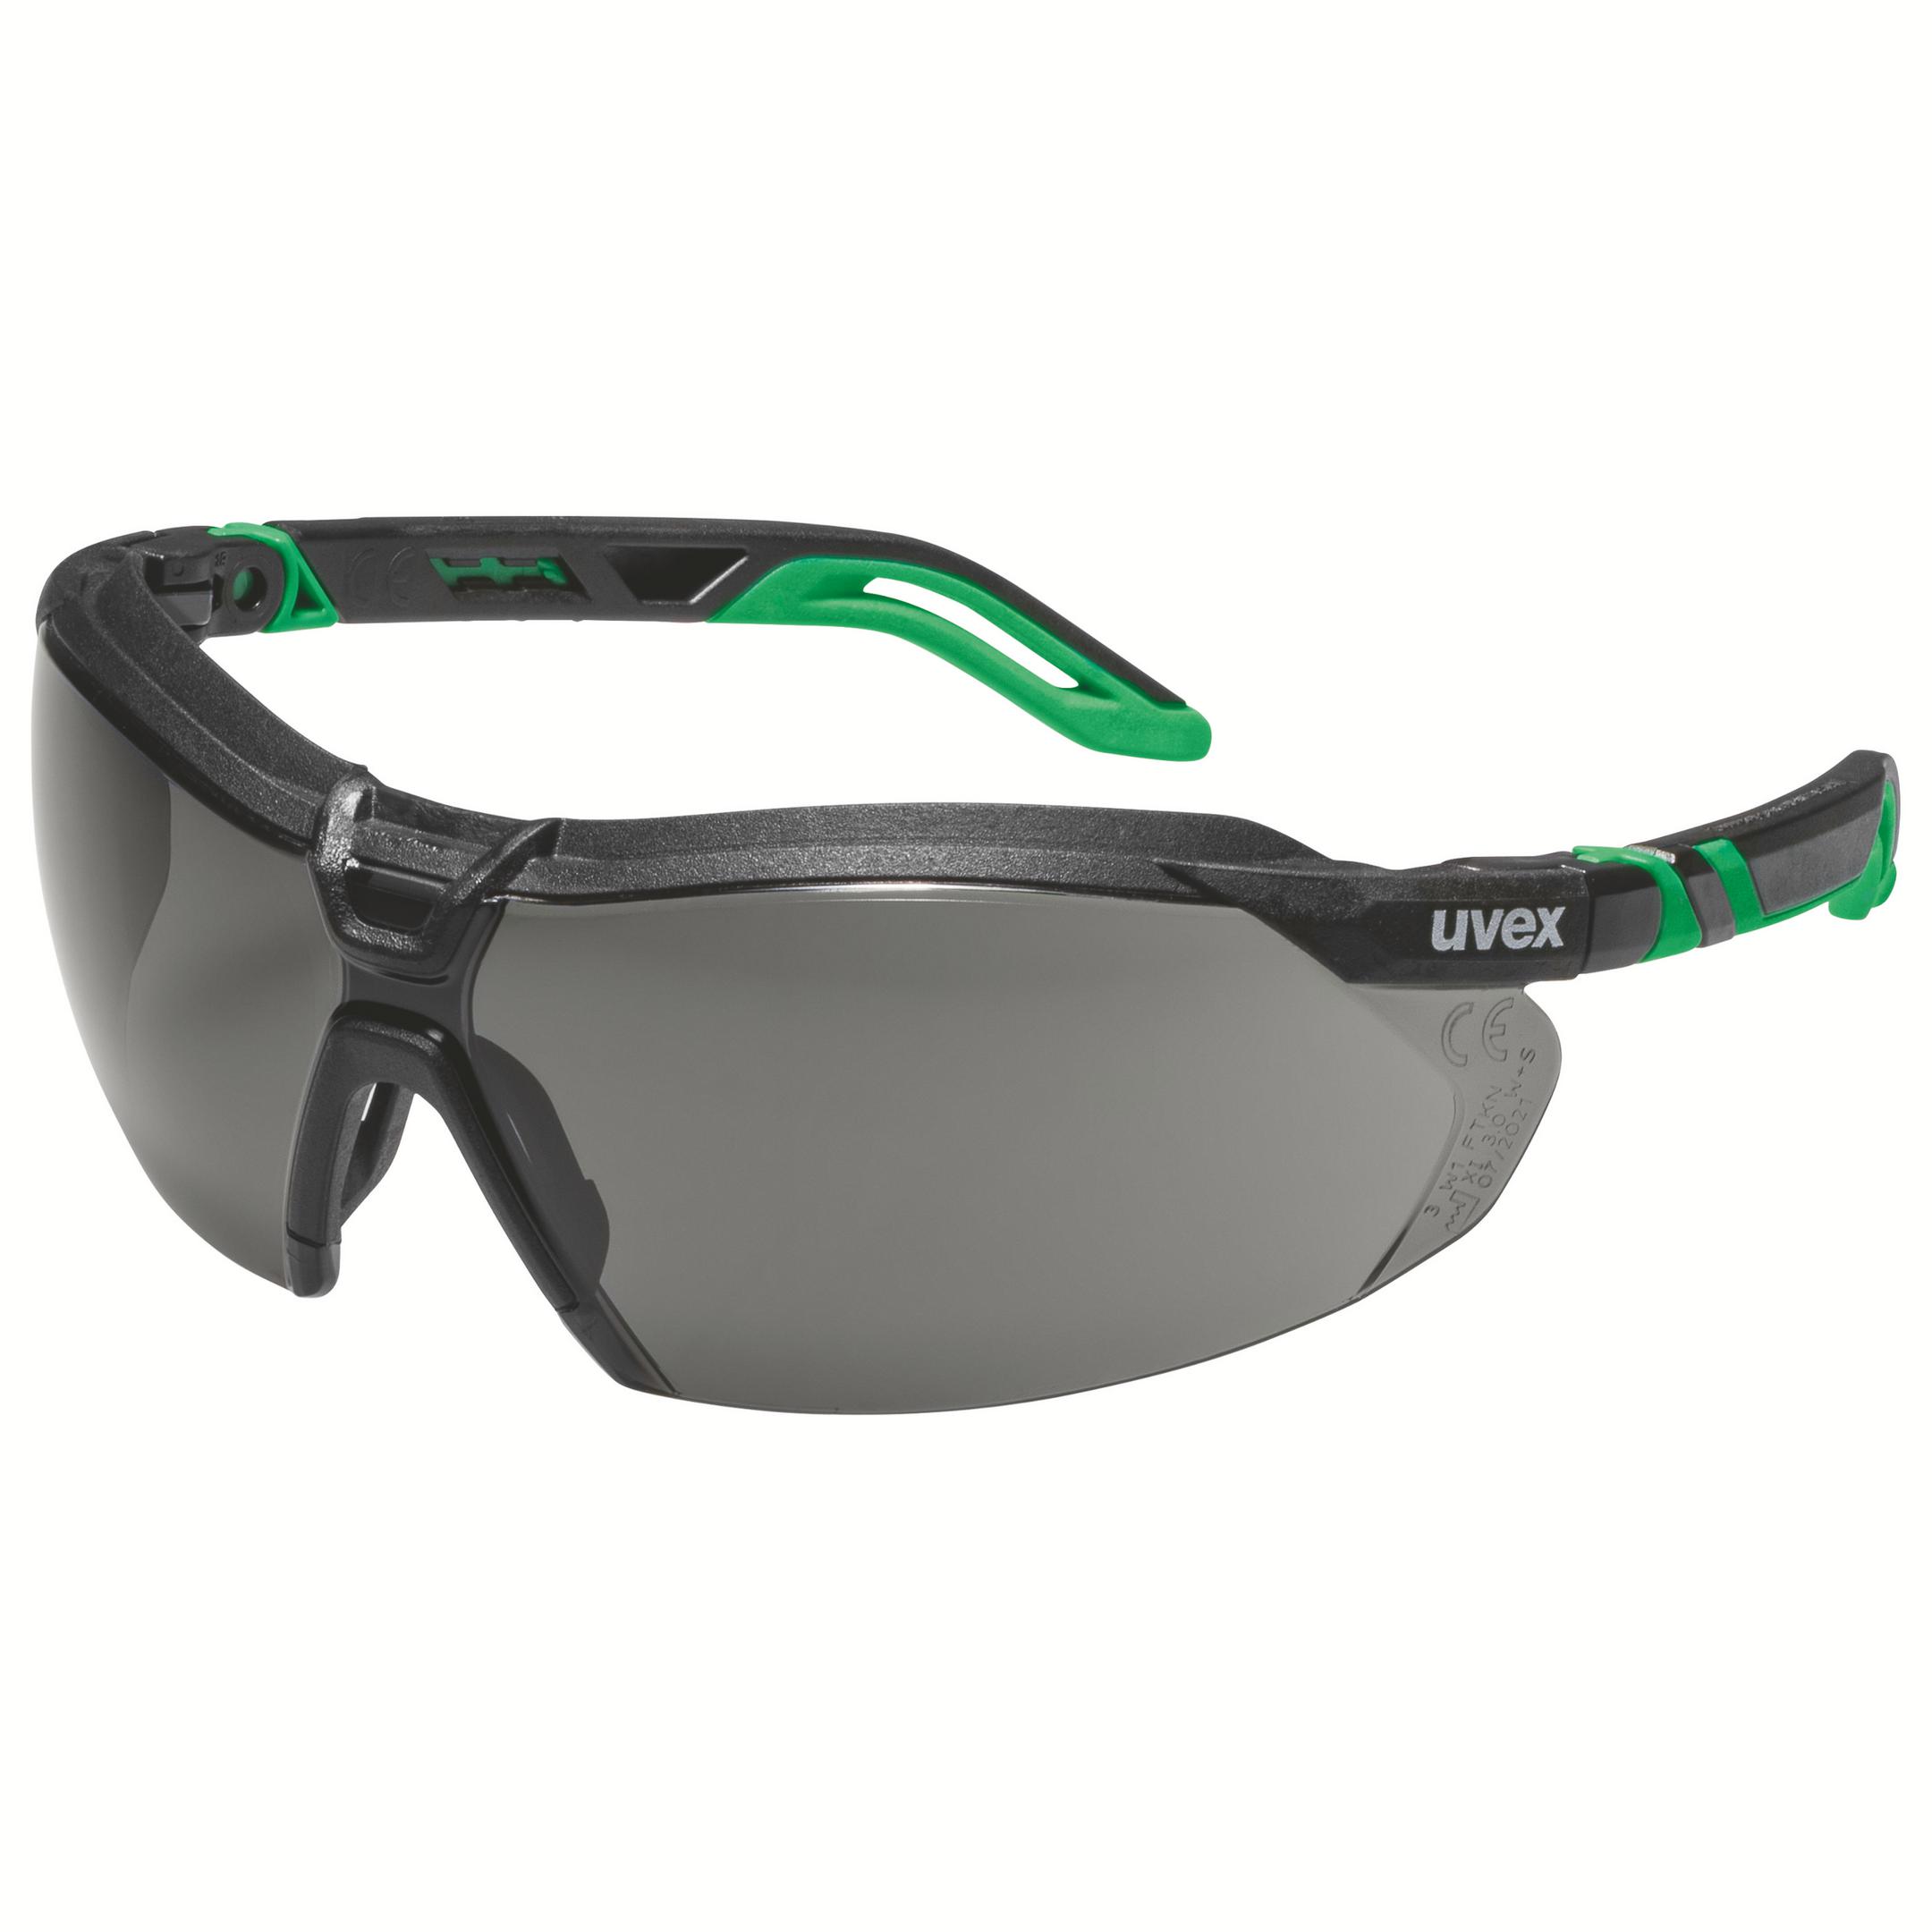 Schweißerschutzbrille uvex i-5 - 3.0